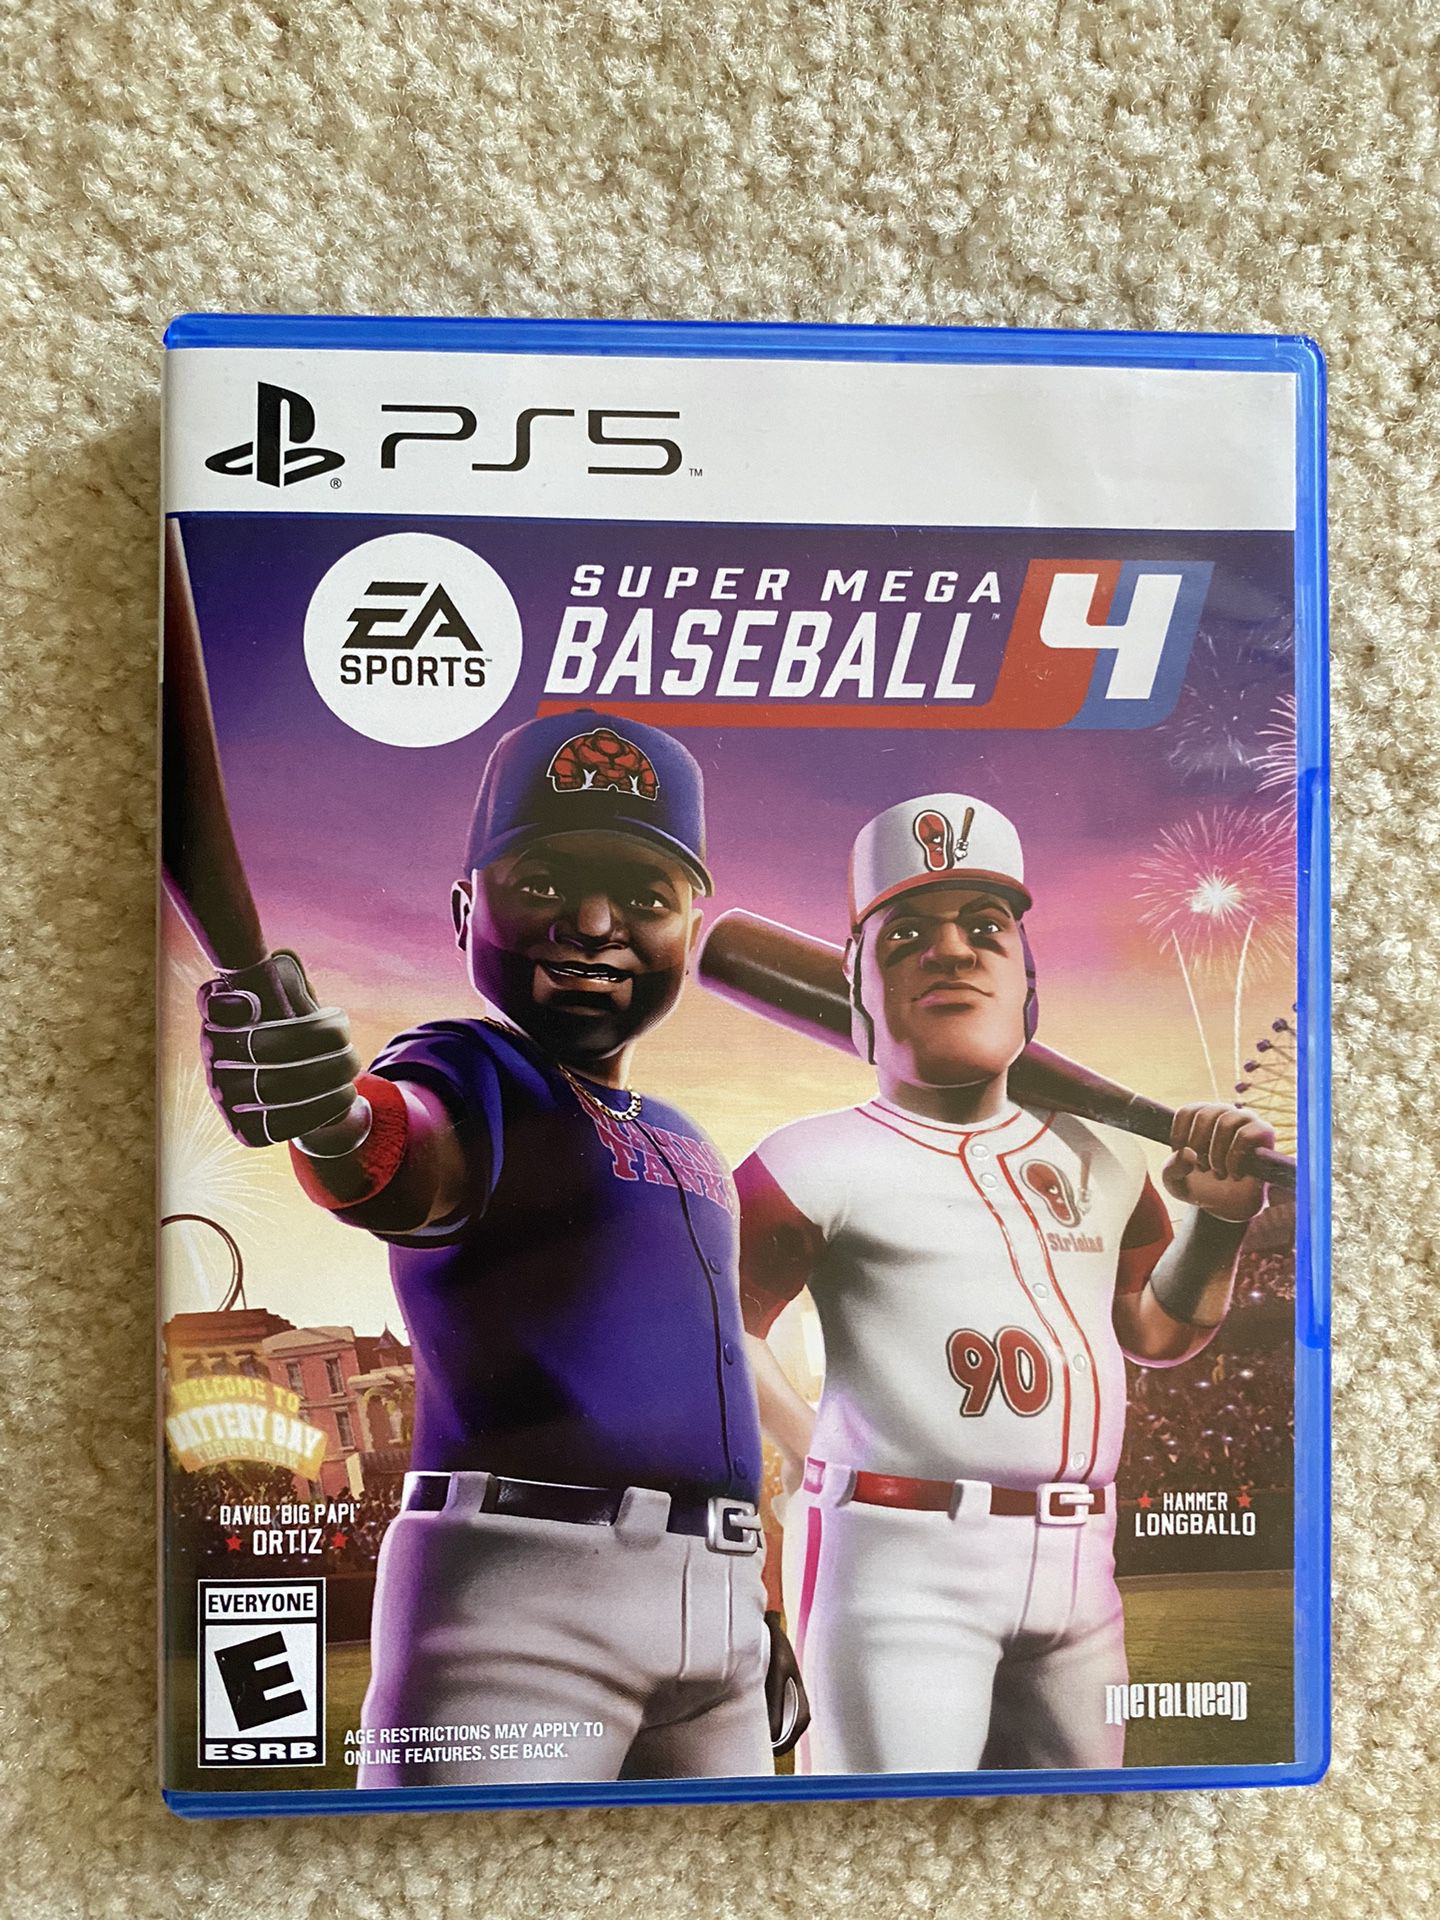 Super Mega Baseball 4 ps5 PlayStation 5